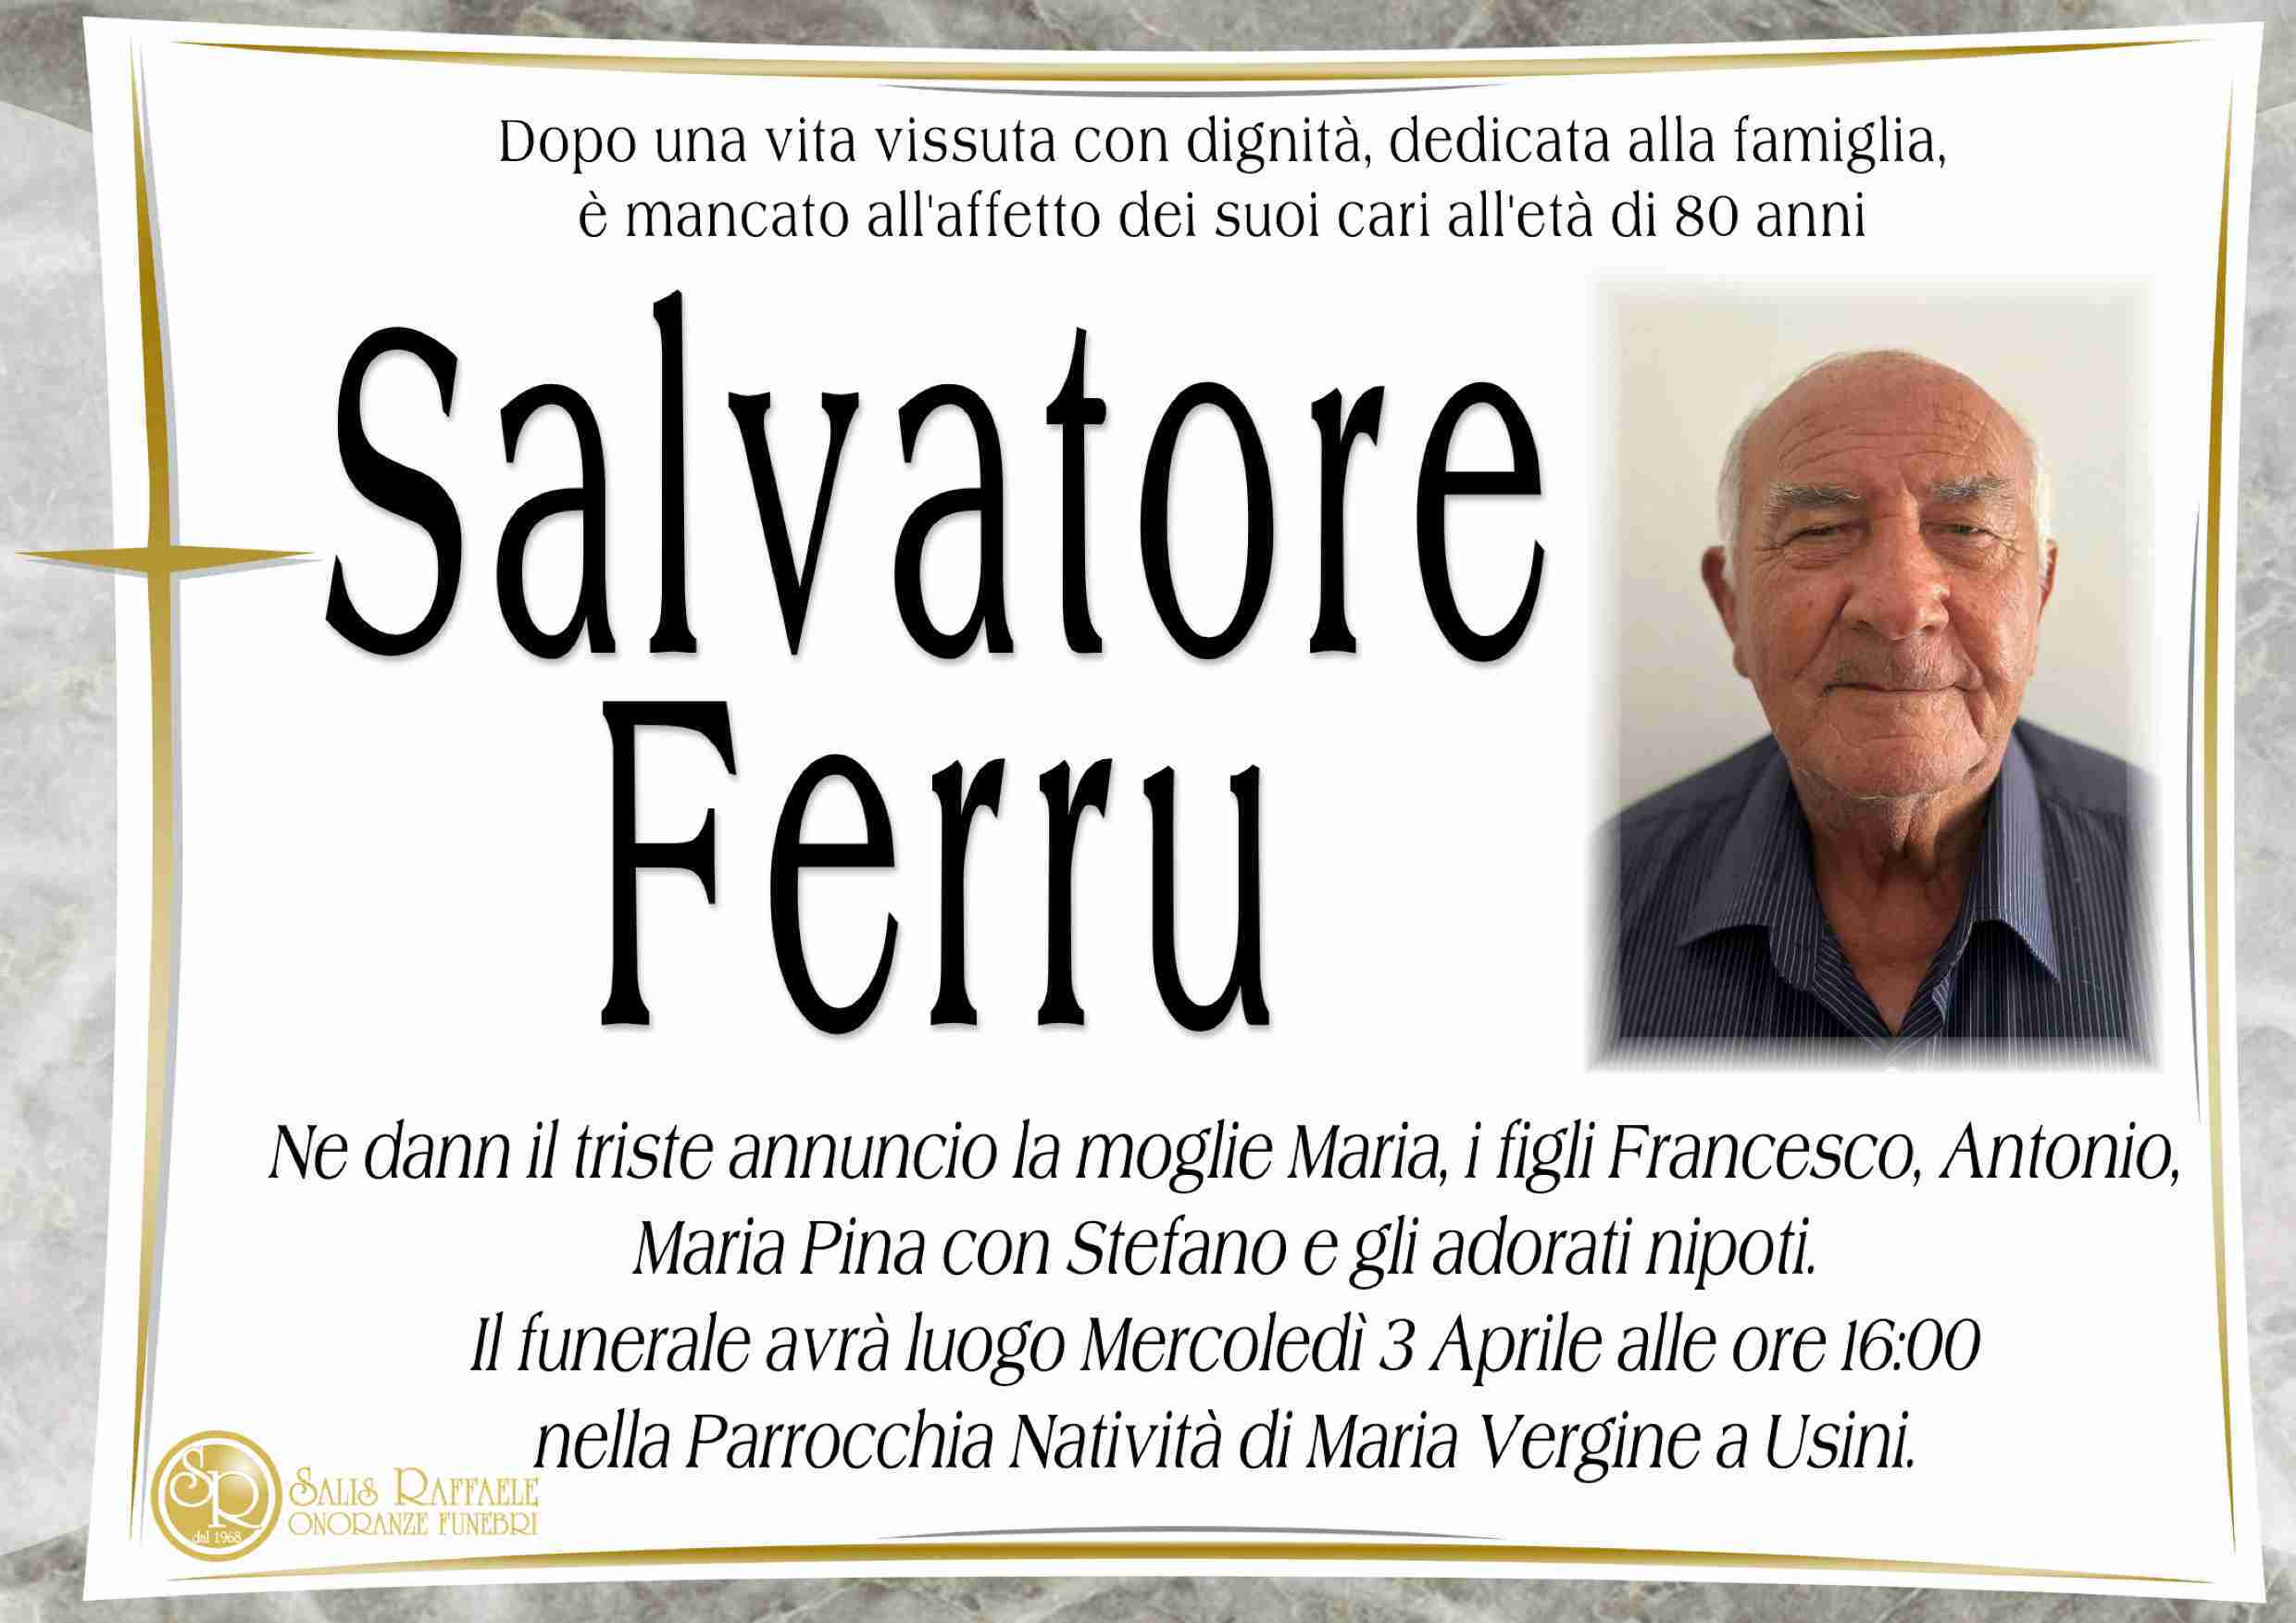 Salvatore Ferru